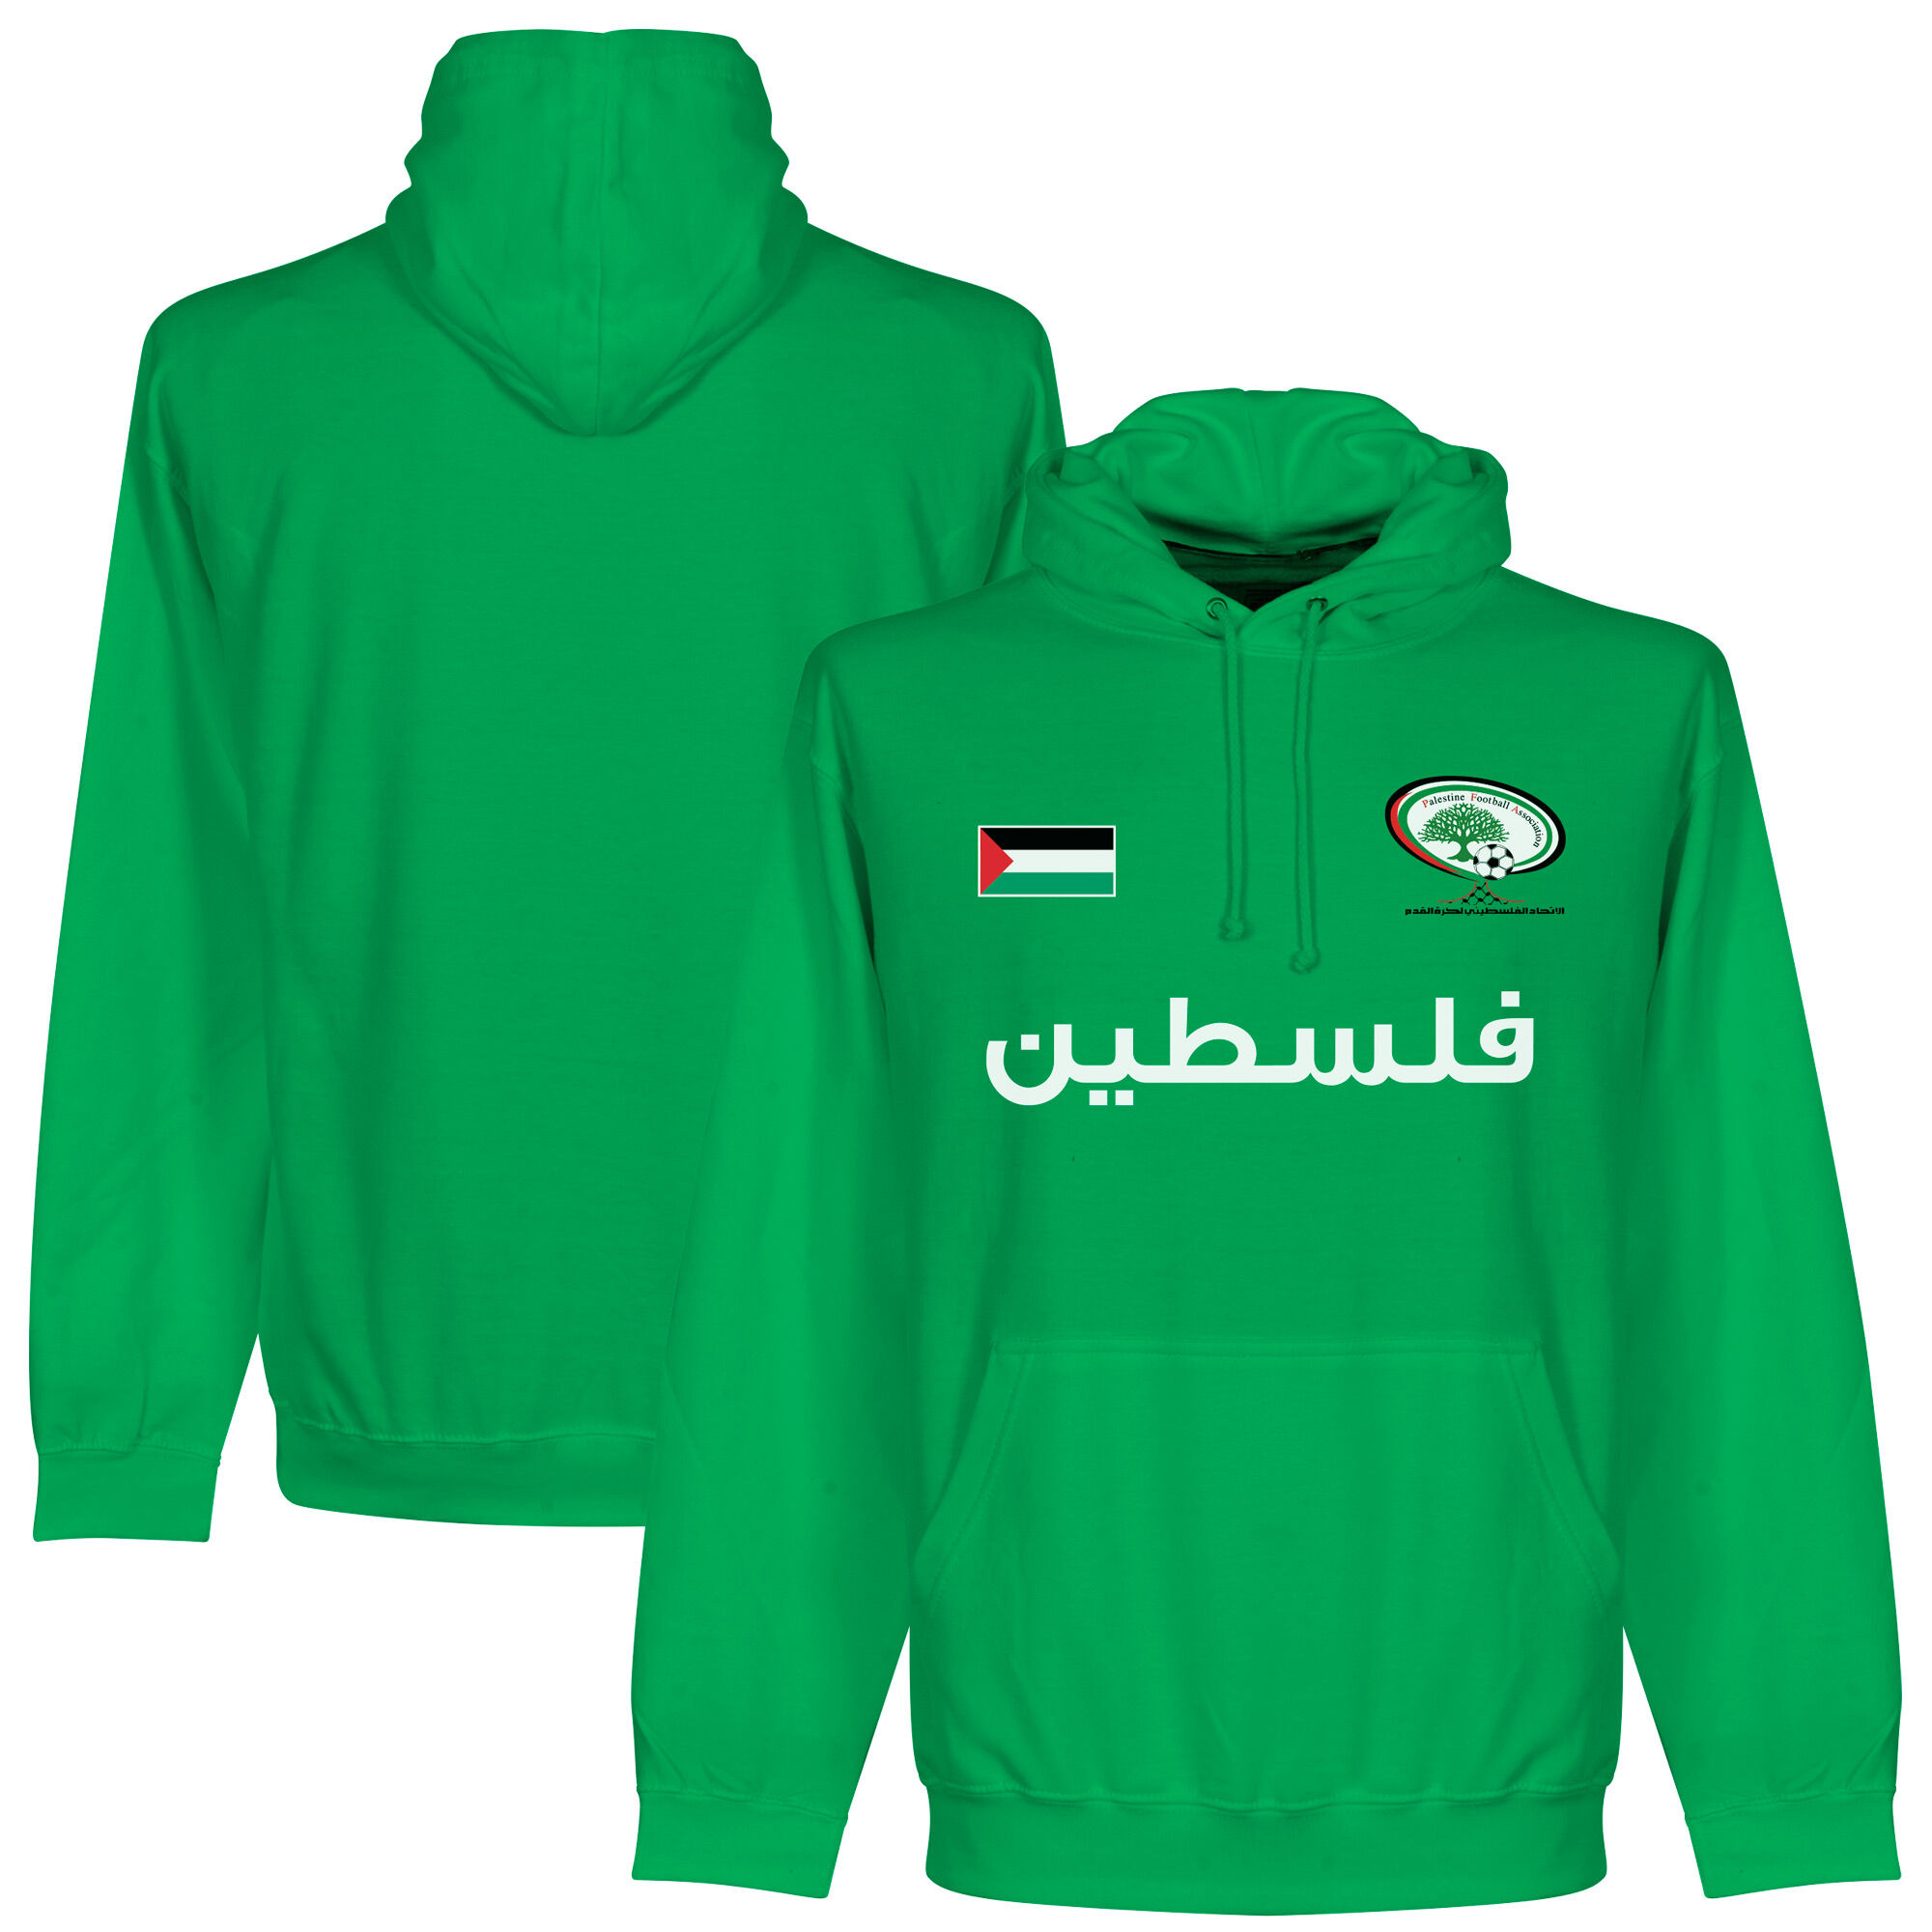 Palestina - Mikina s kapucí dětská - zelená